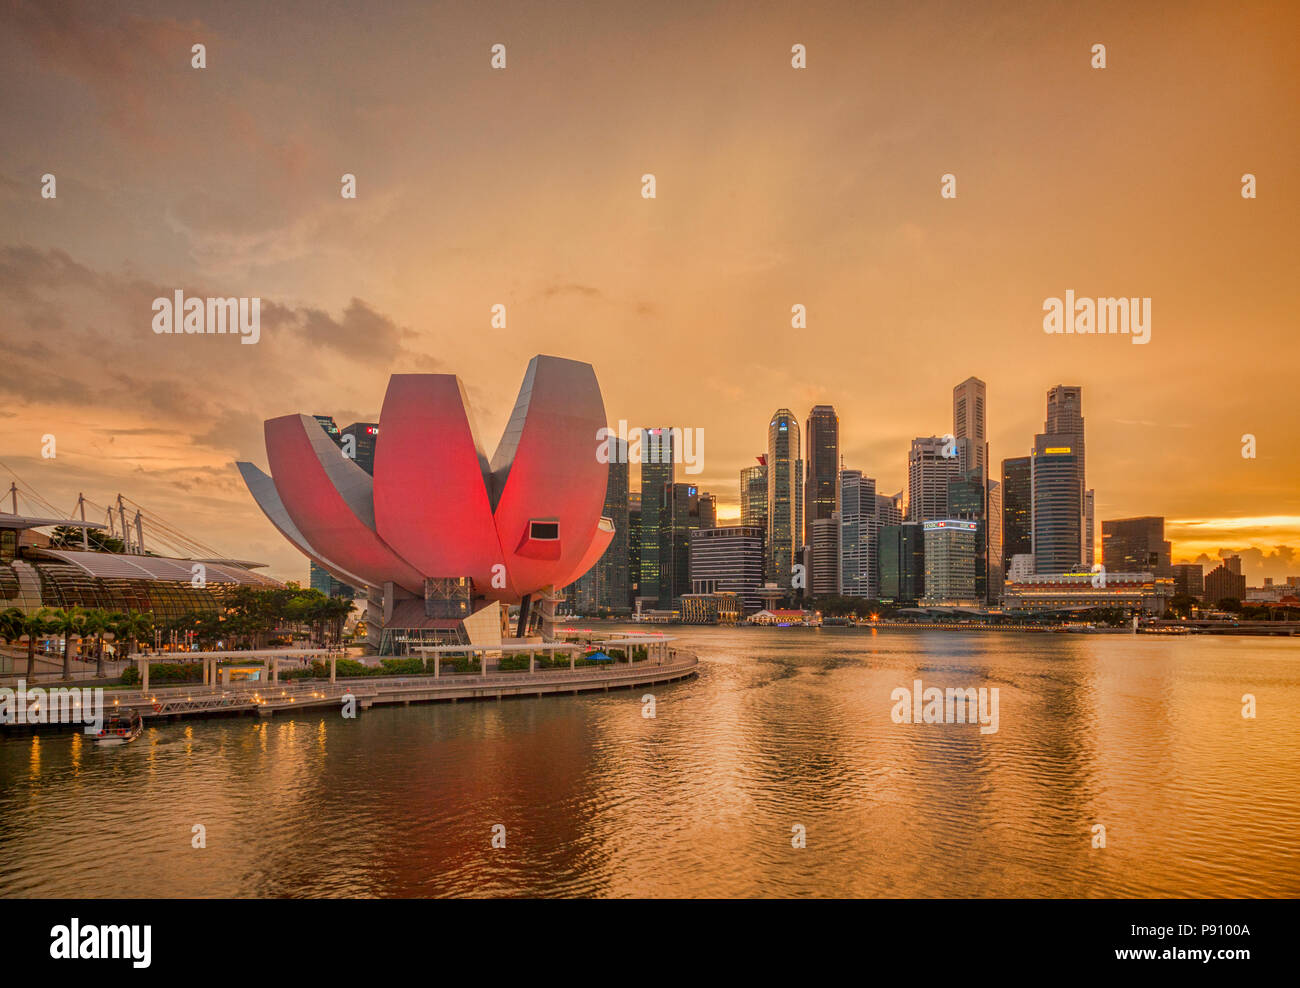 Singapour sous un ciel orange comme un orage commence, avec l'art et la Science Museum illuminée en rose. A l'architecte Moshe Safdie. Banque D'Images